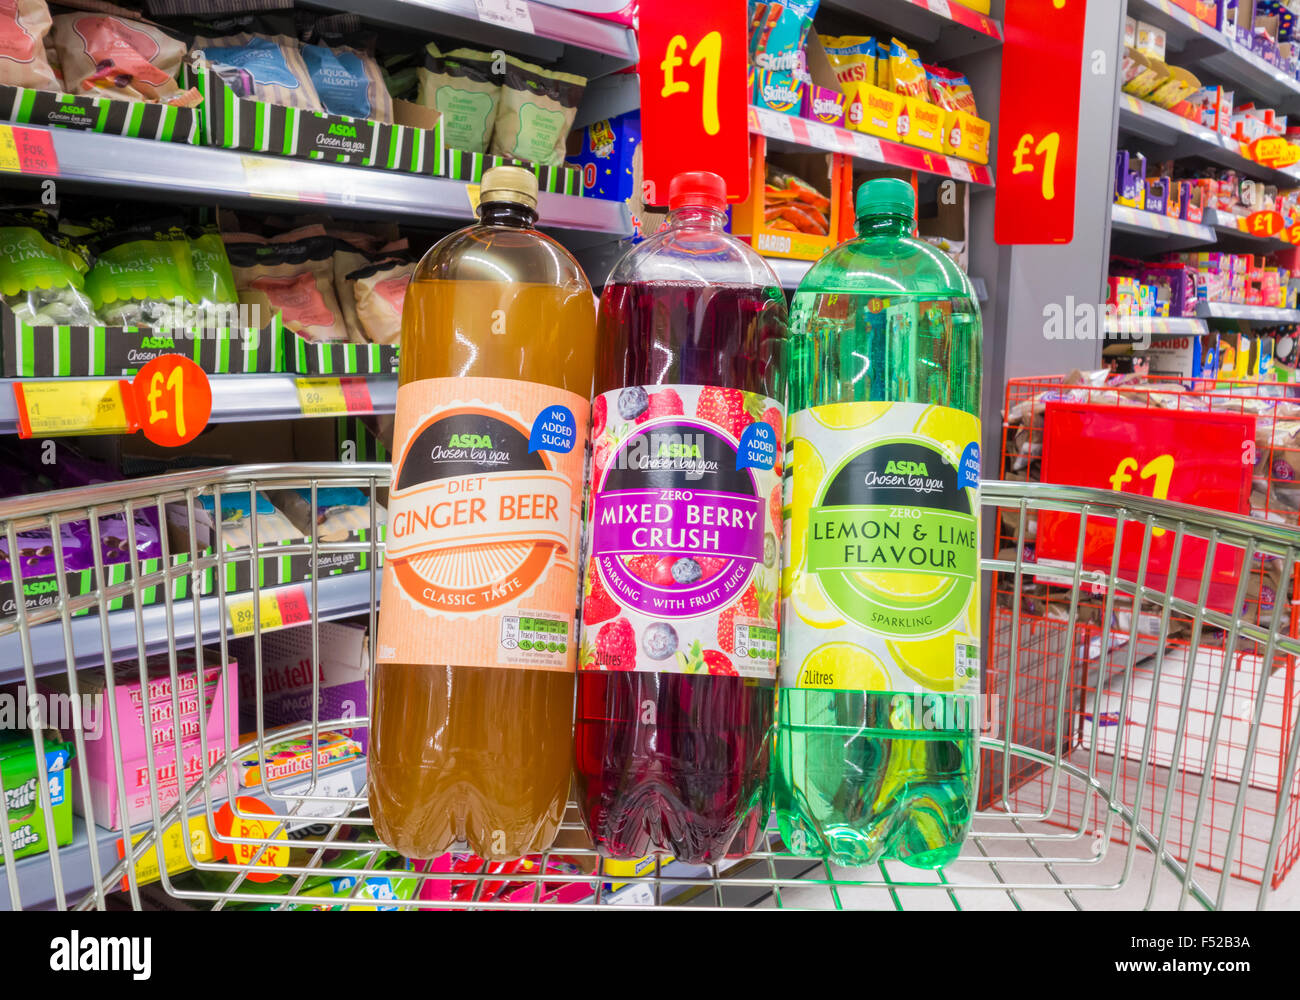 Boissons au jus de fruit de l'Asda dans le chariot du supermarché de l'Asda. ROYAUME-UNI Banque D'Images